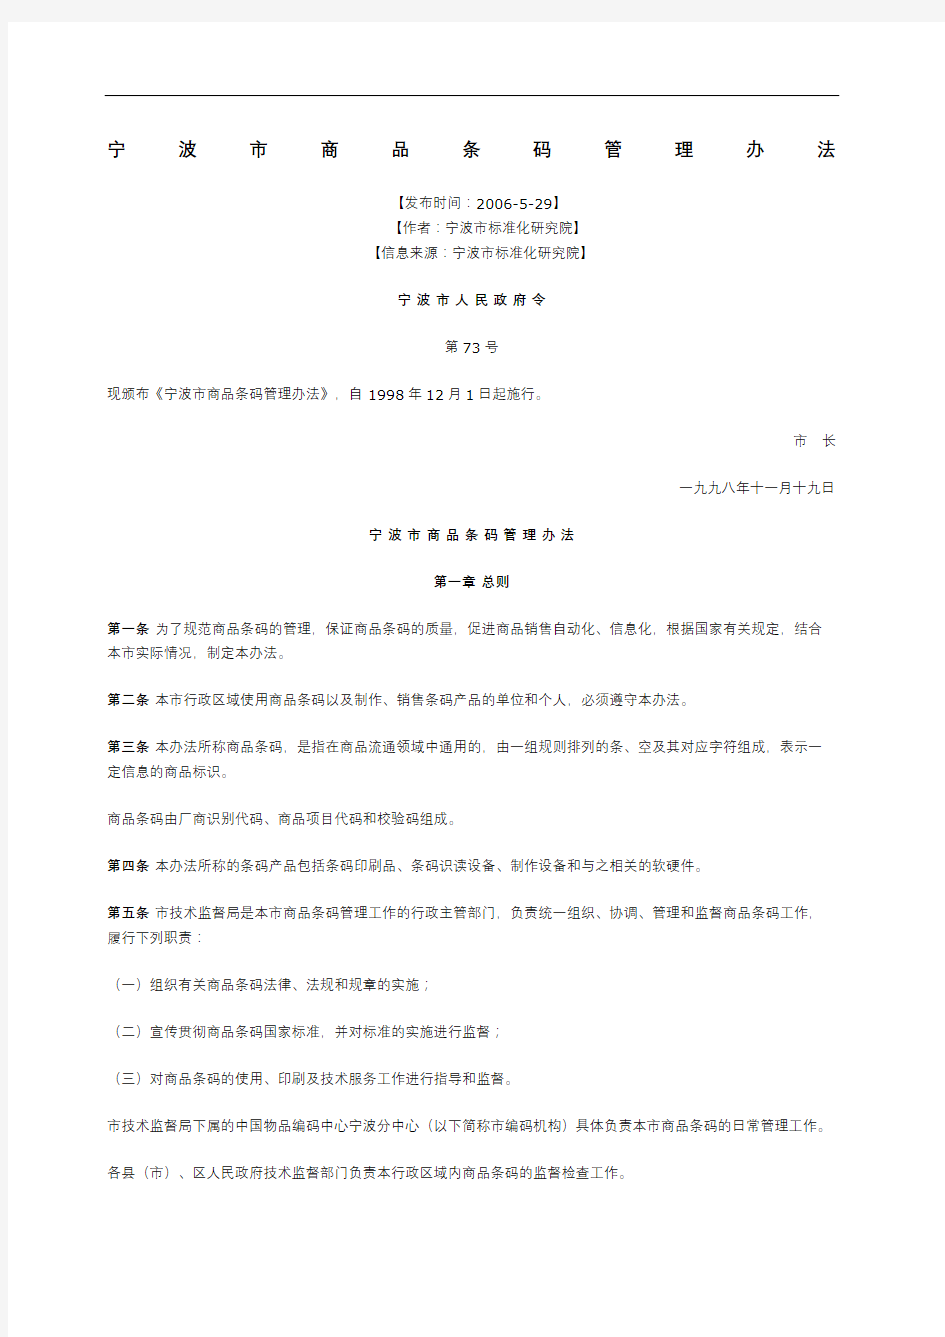 宁波市商品条码管理规定